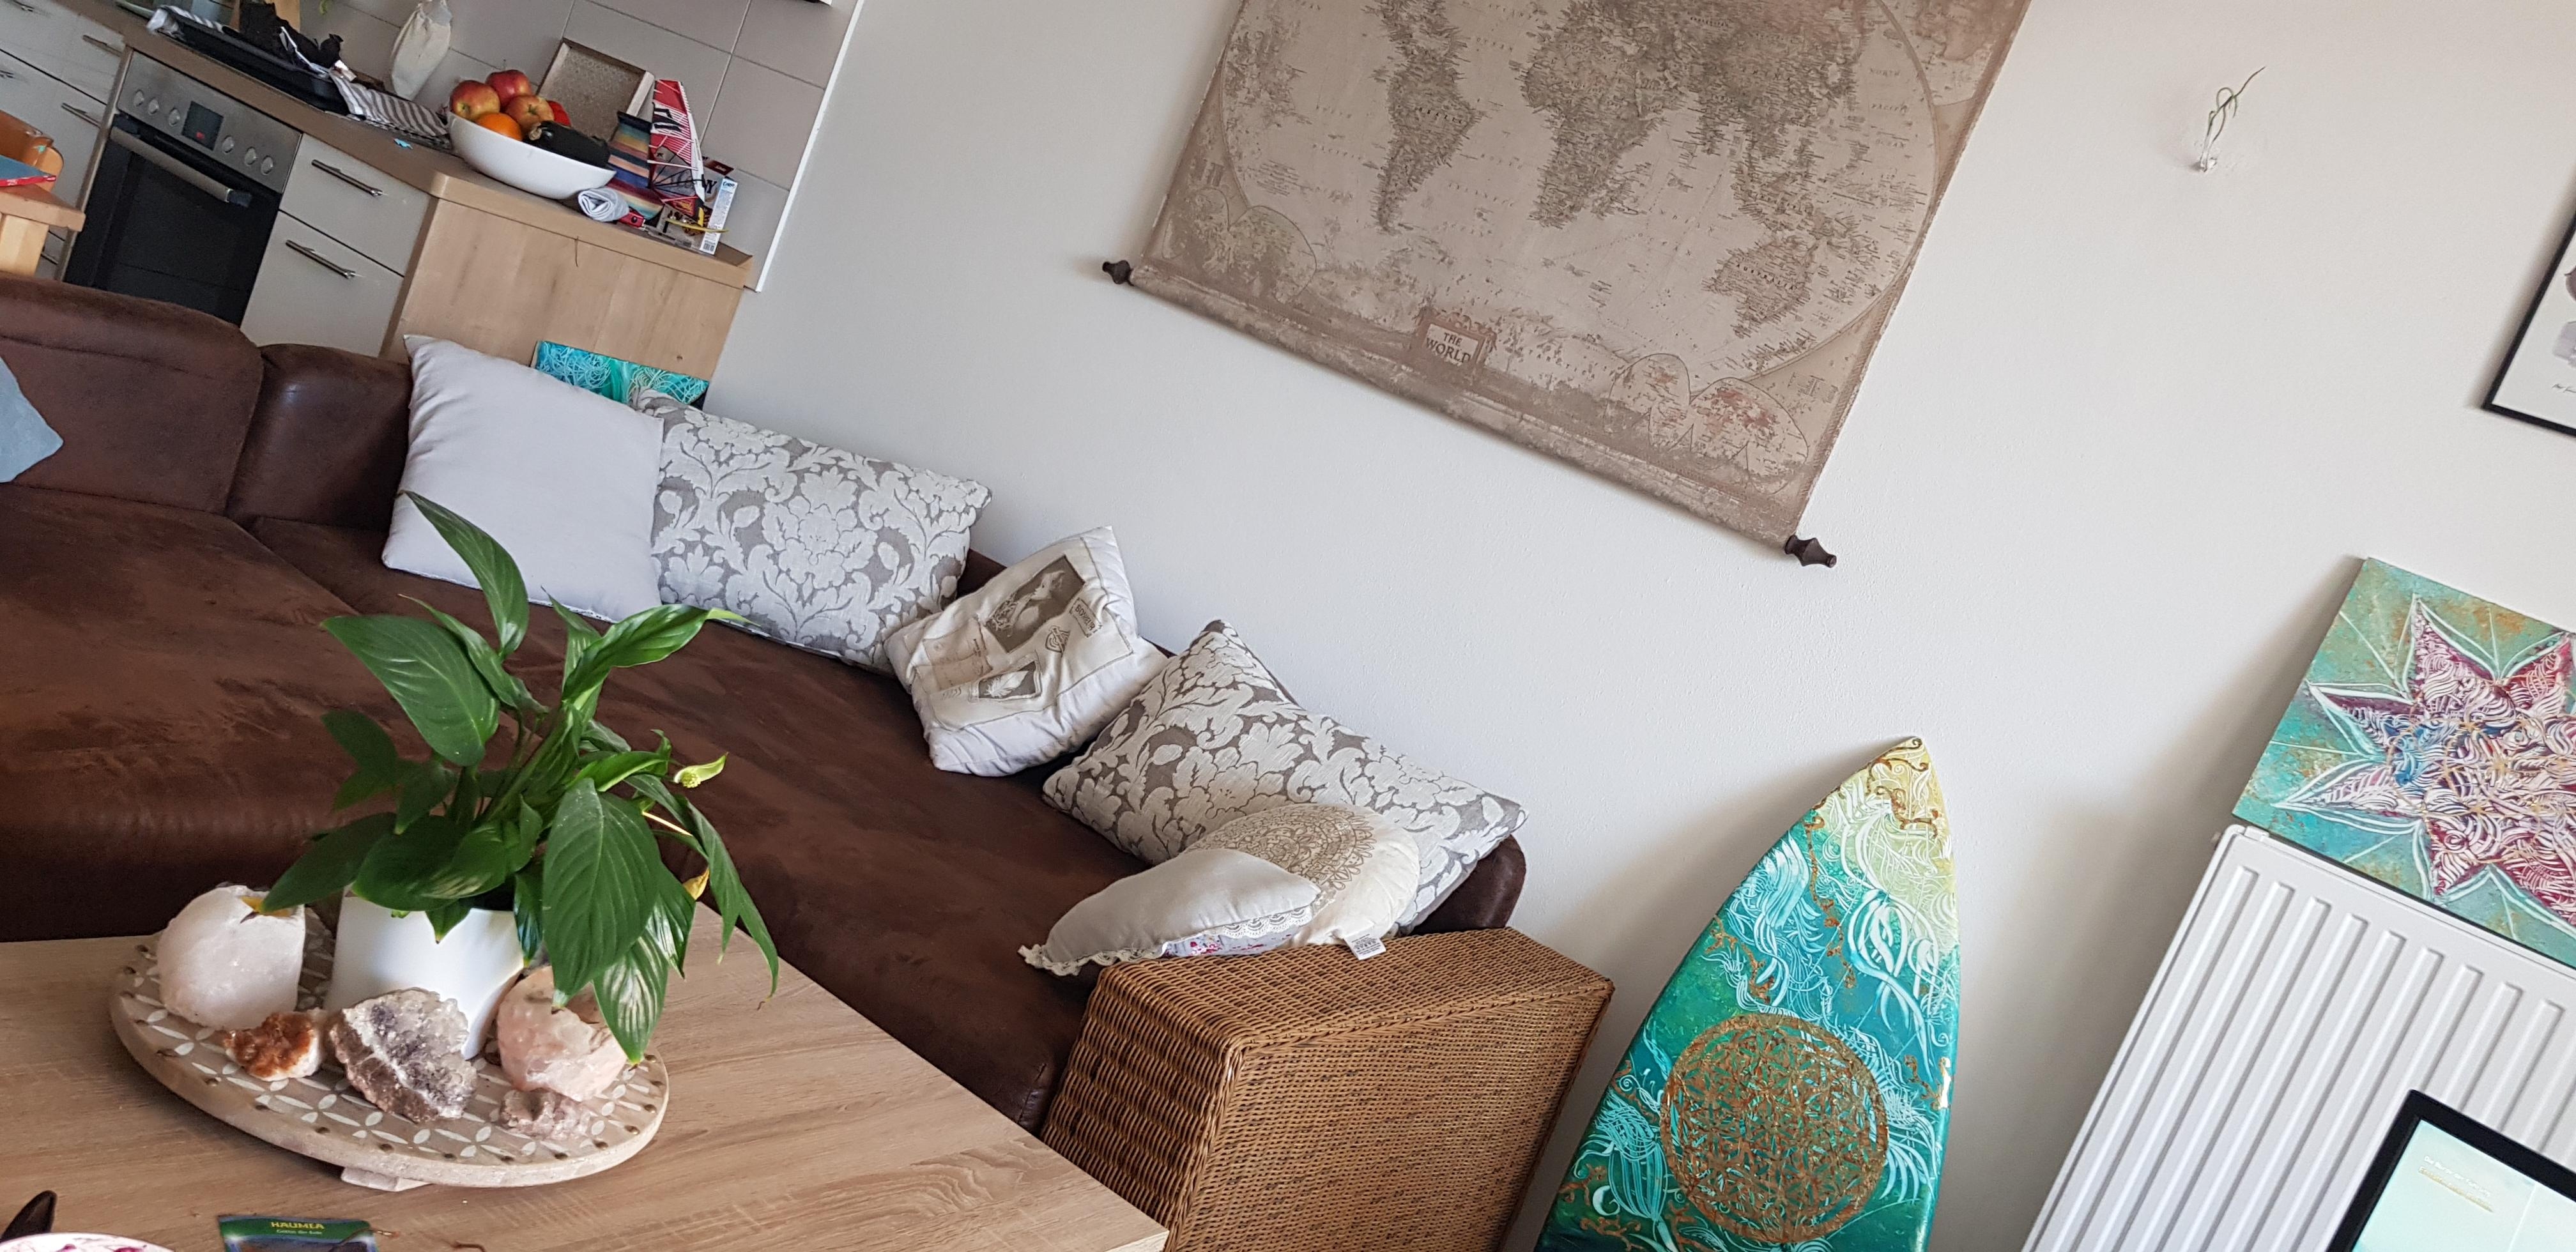 #neue couch #wohnzimmer #offeneküche #surfart #weltkarte #tinyapartment